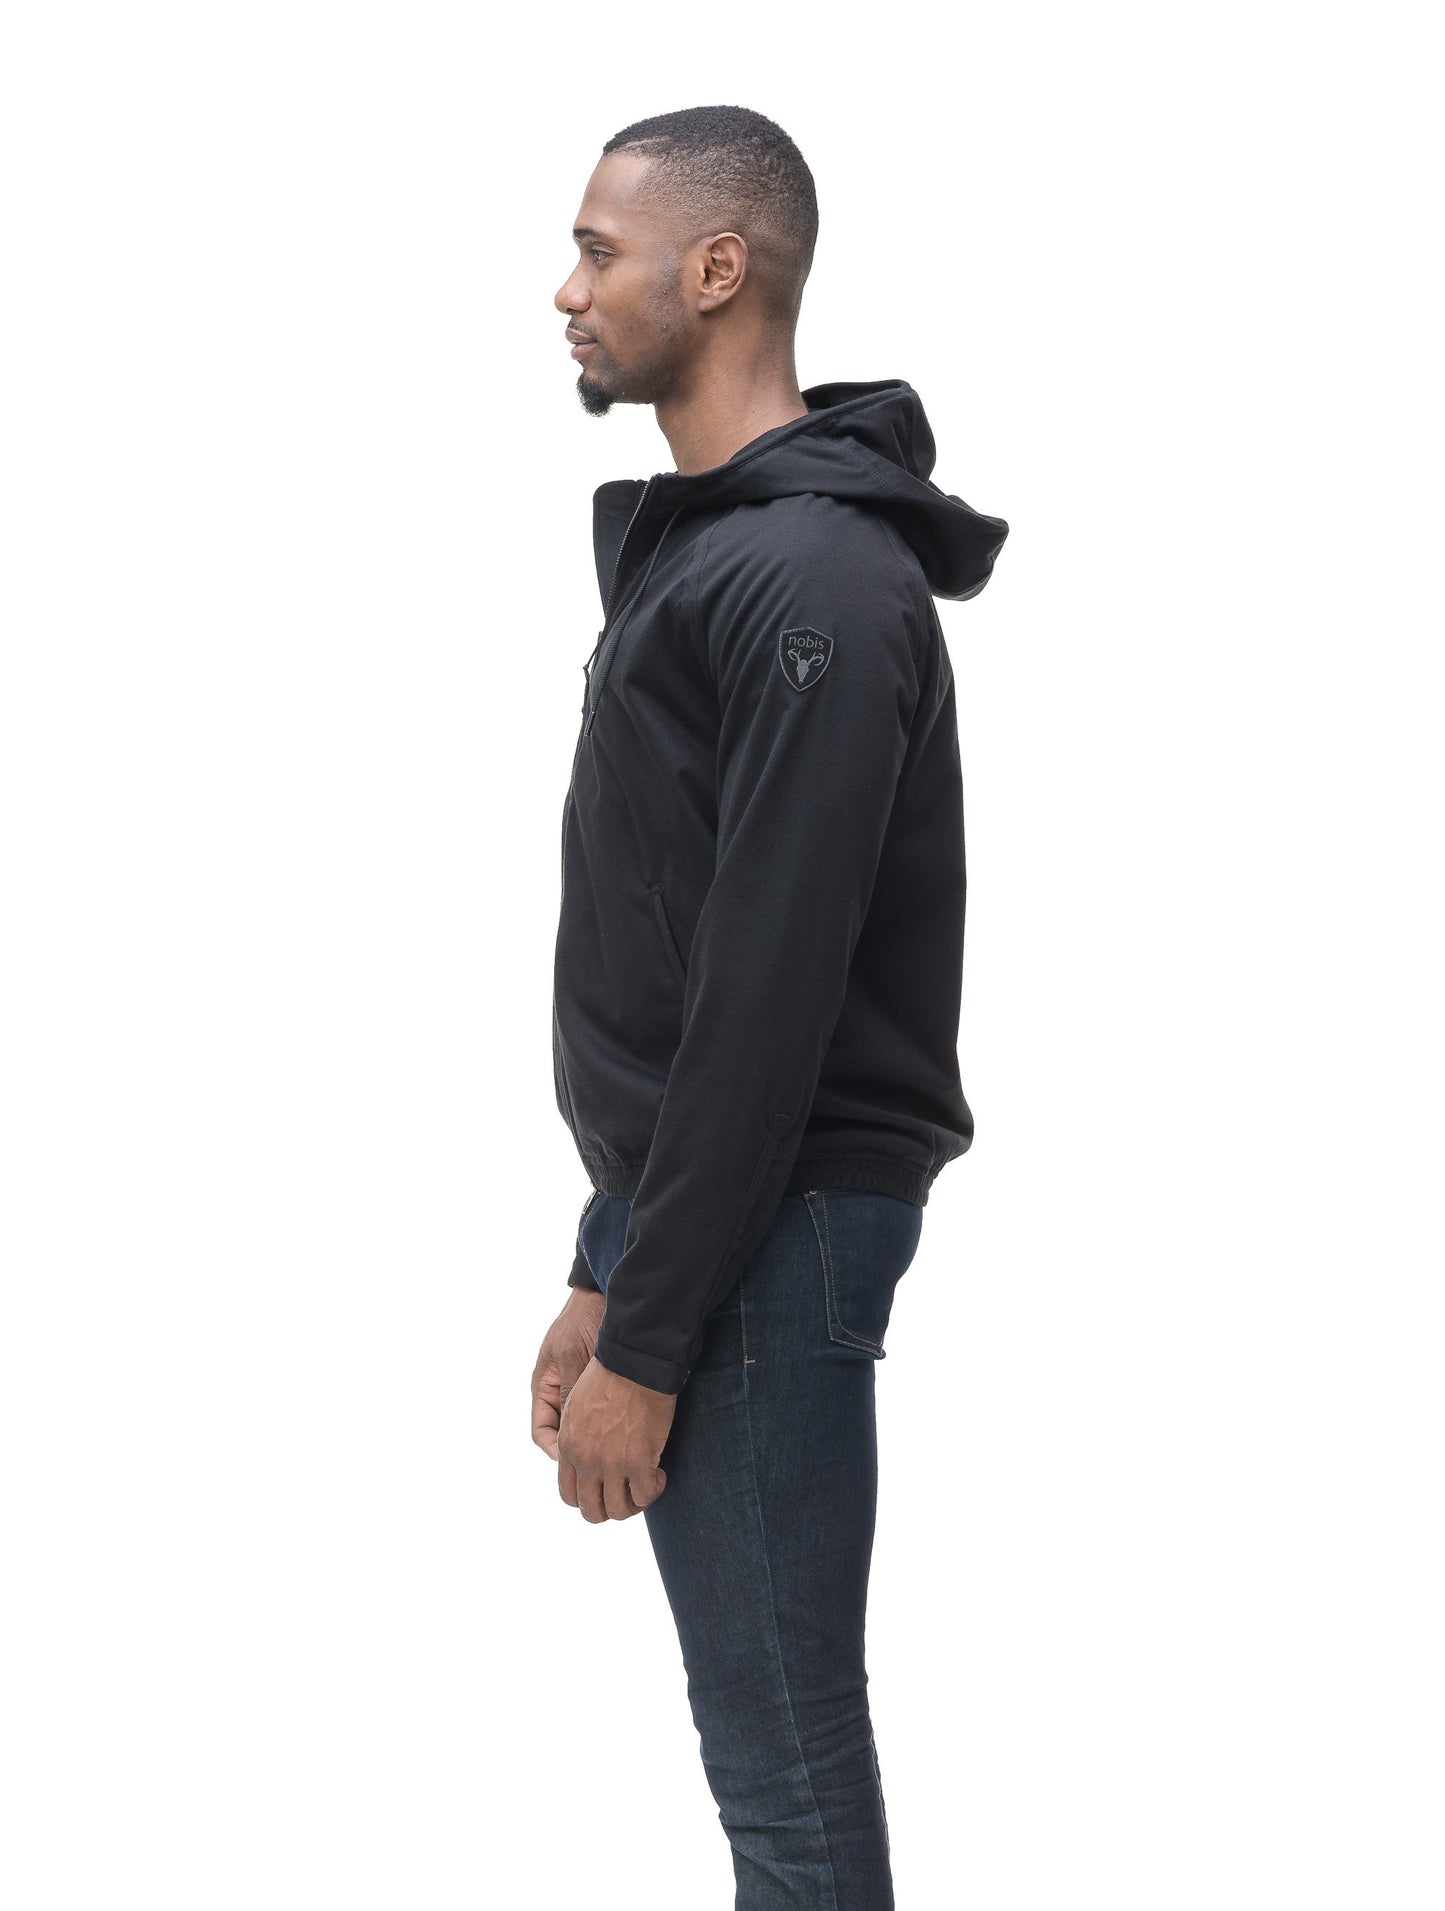 Men's hooded zip up sweater in Black